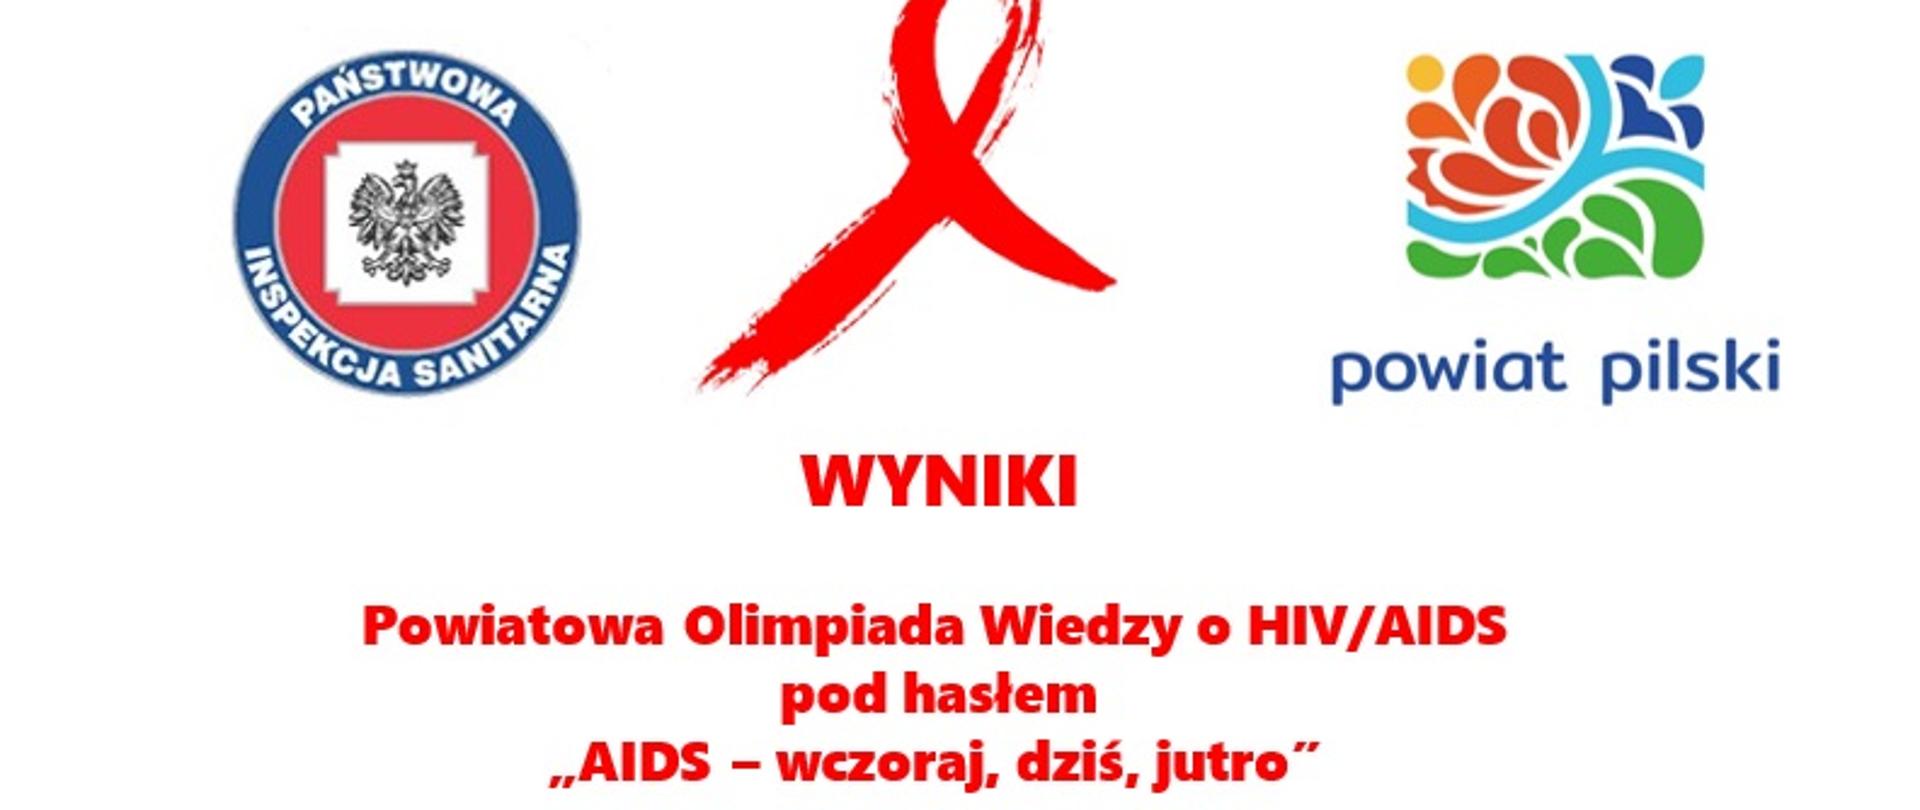 Wyniki Powiatowej Olimpiady Wiedzy o HIV/AIDS pod hasłem
„AIDS – wczoraj, dziś, jutro”